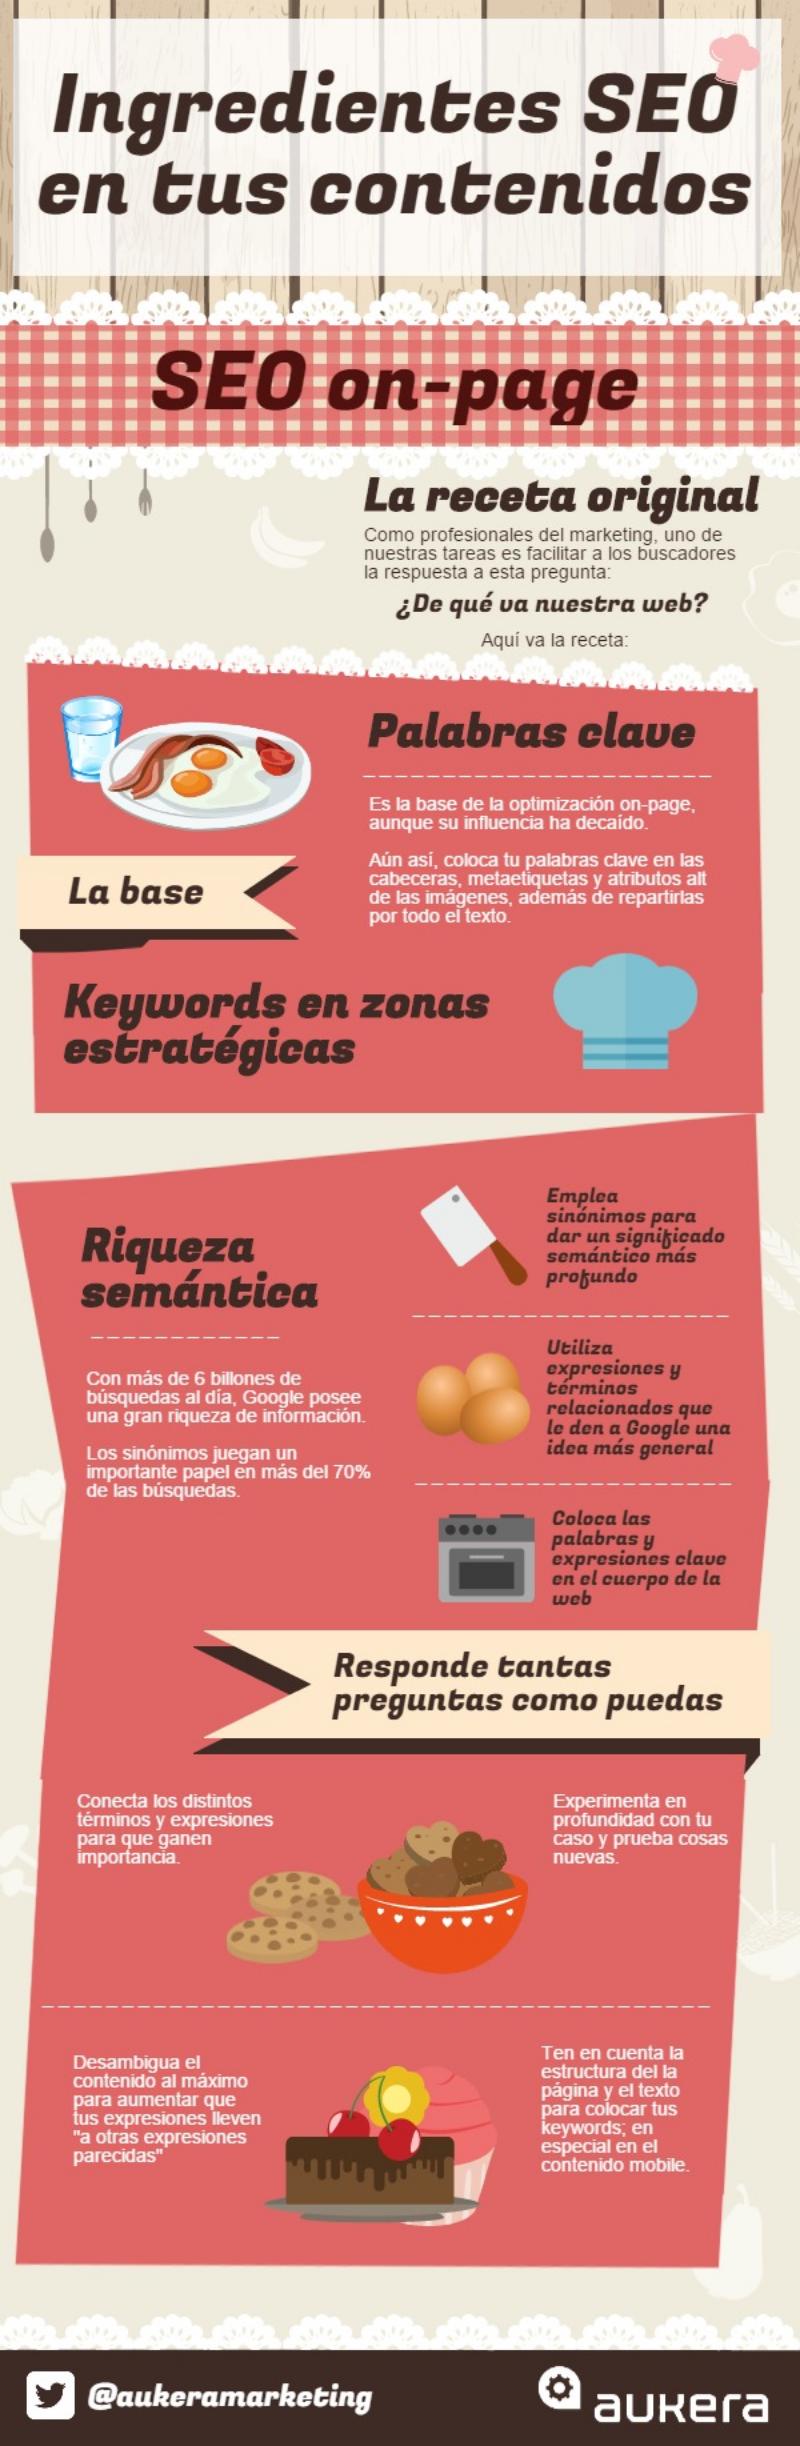 Infografía en español para aprender más sobre SEO on-page